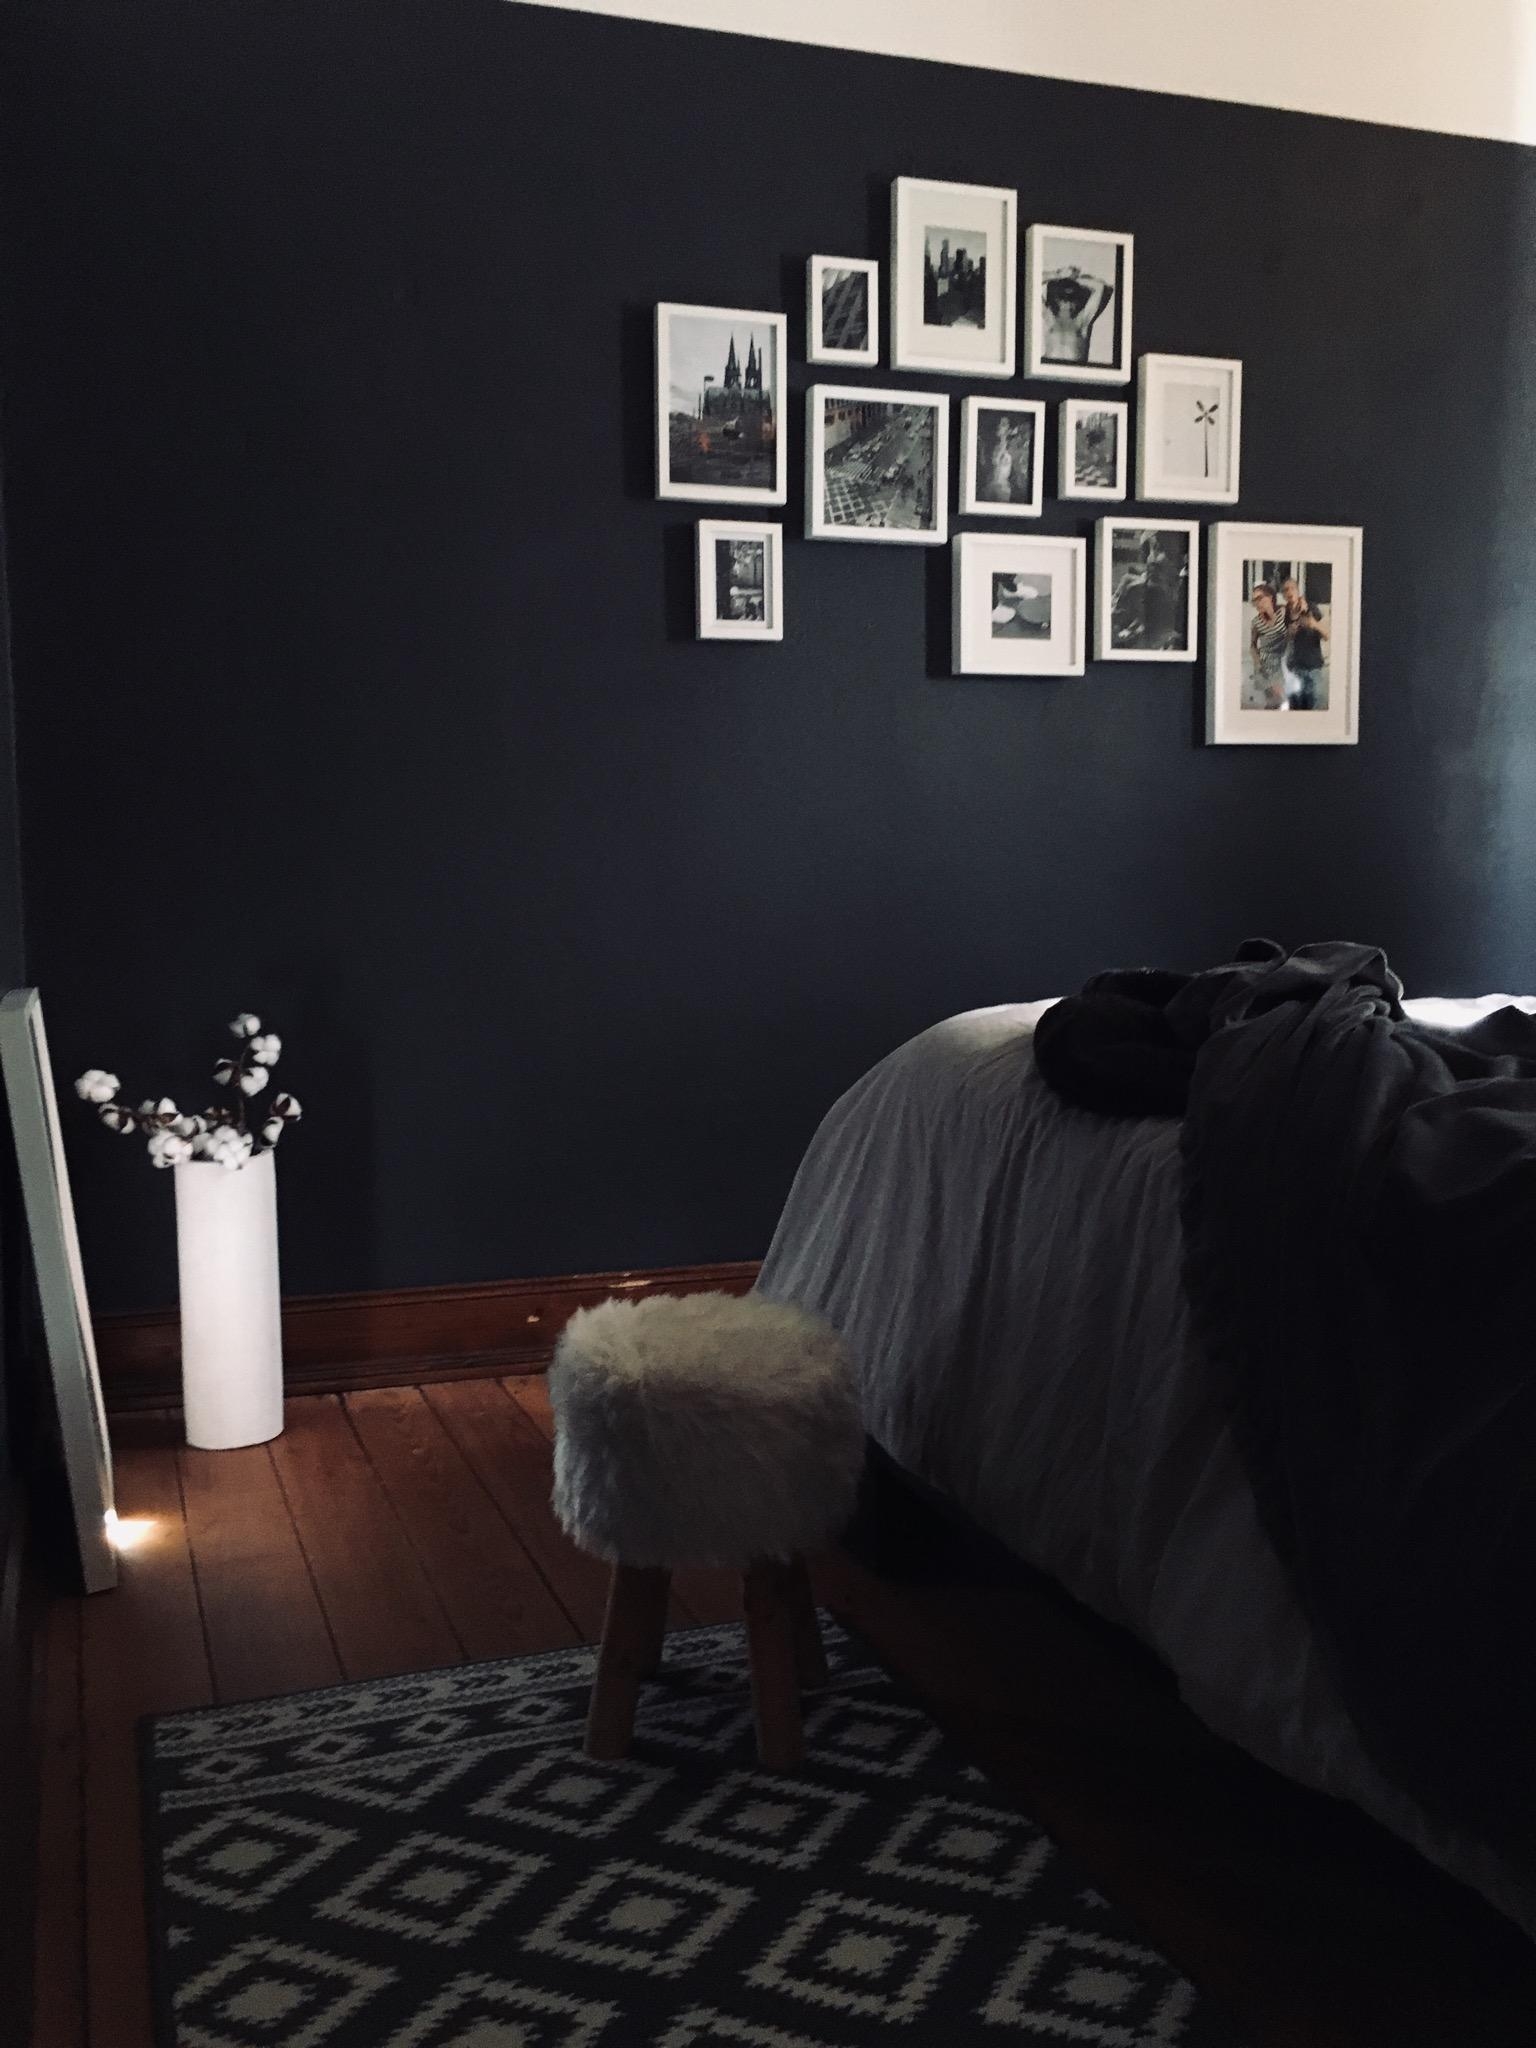 Ich liebe die neue Farbe im Schlafzimmer ❤️
#altbau #schlafzimmer #bett